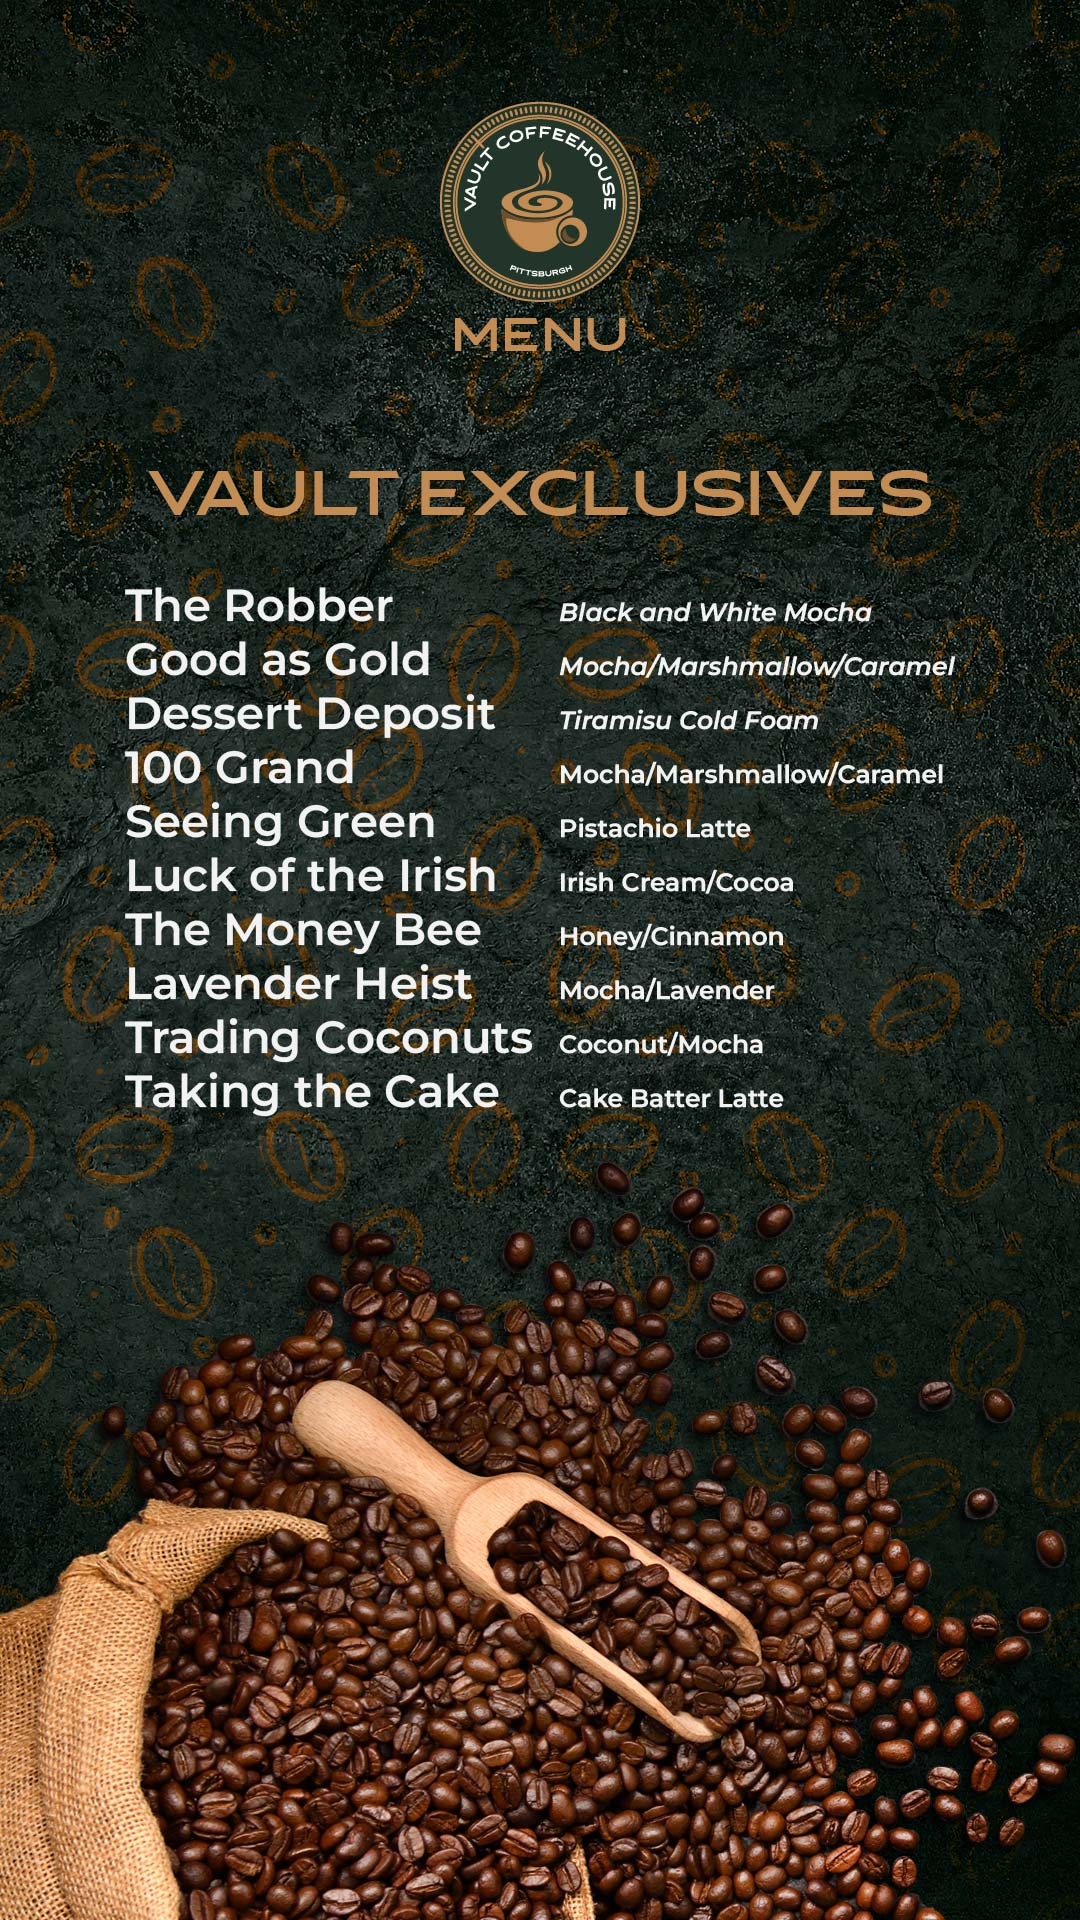 Vault coffee